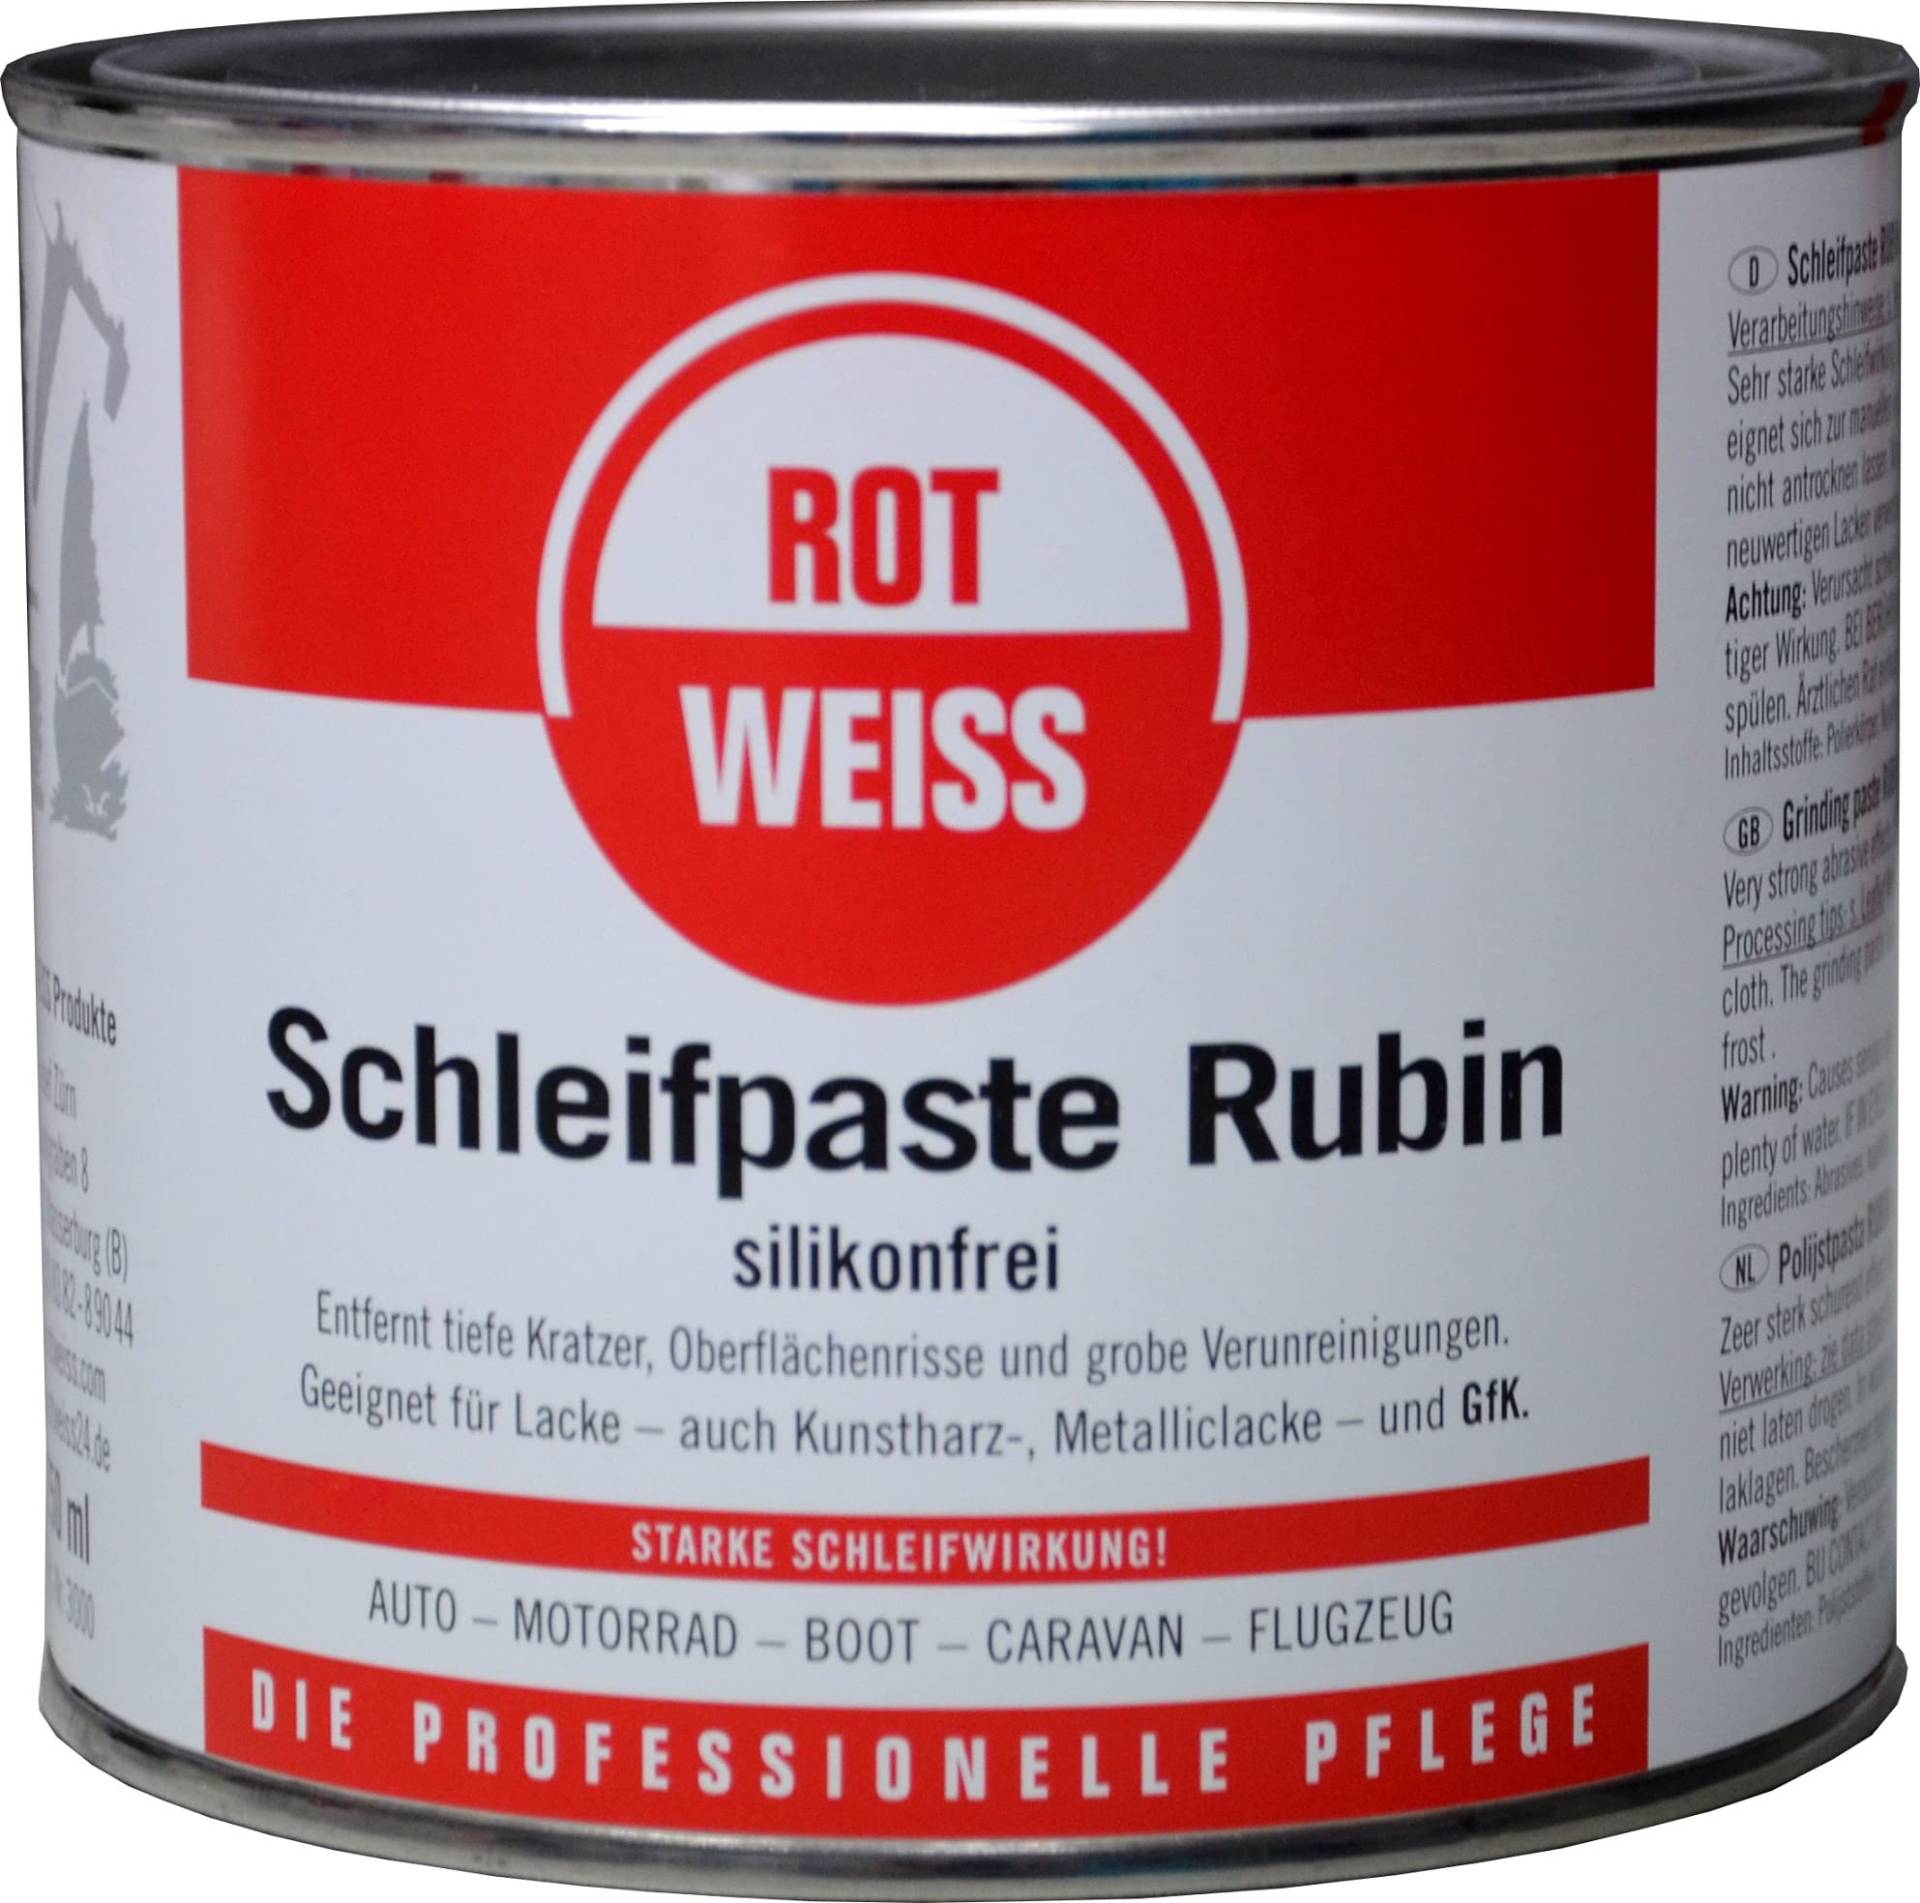 ROTWEISS 3000 Schleifpaste Rubin 750 ml von ROT WEISS